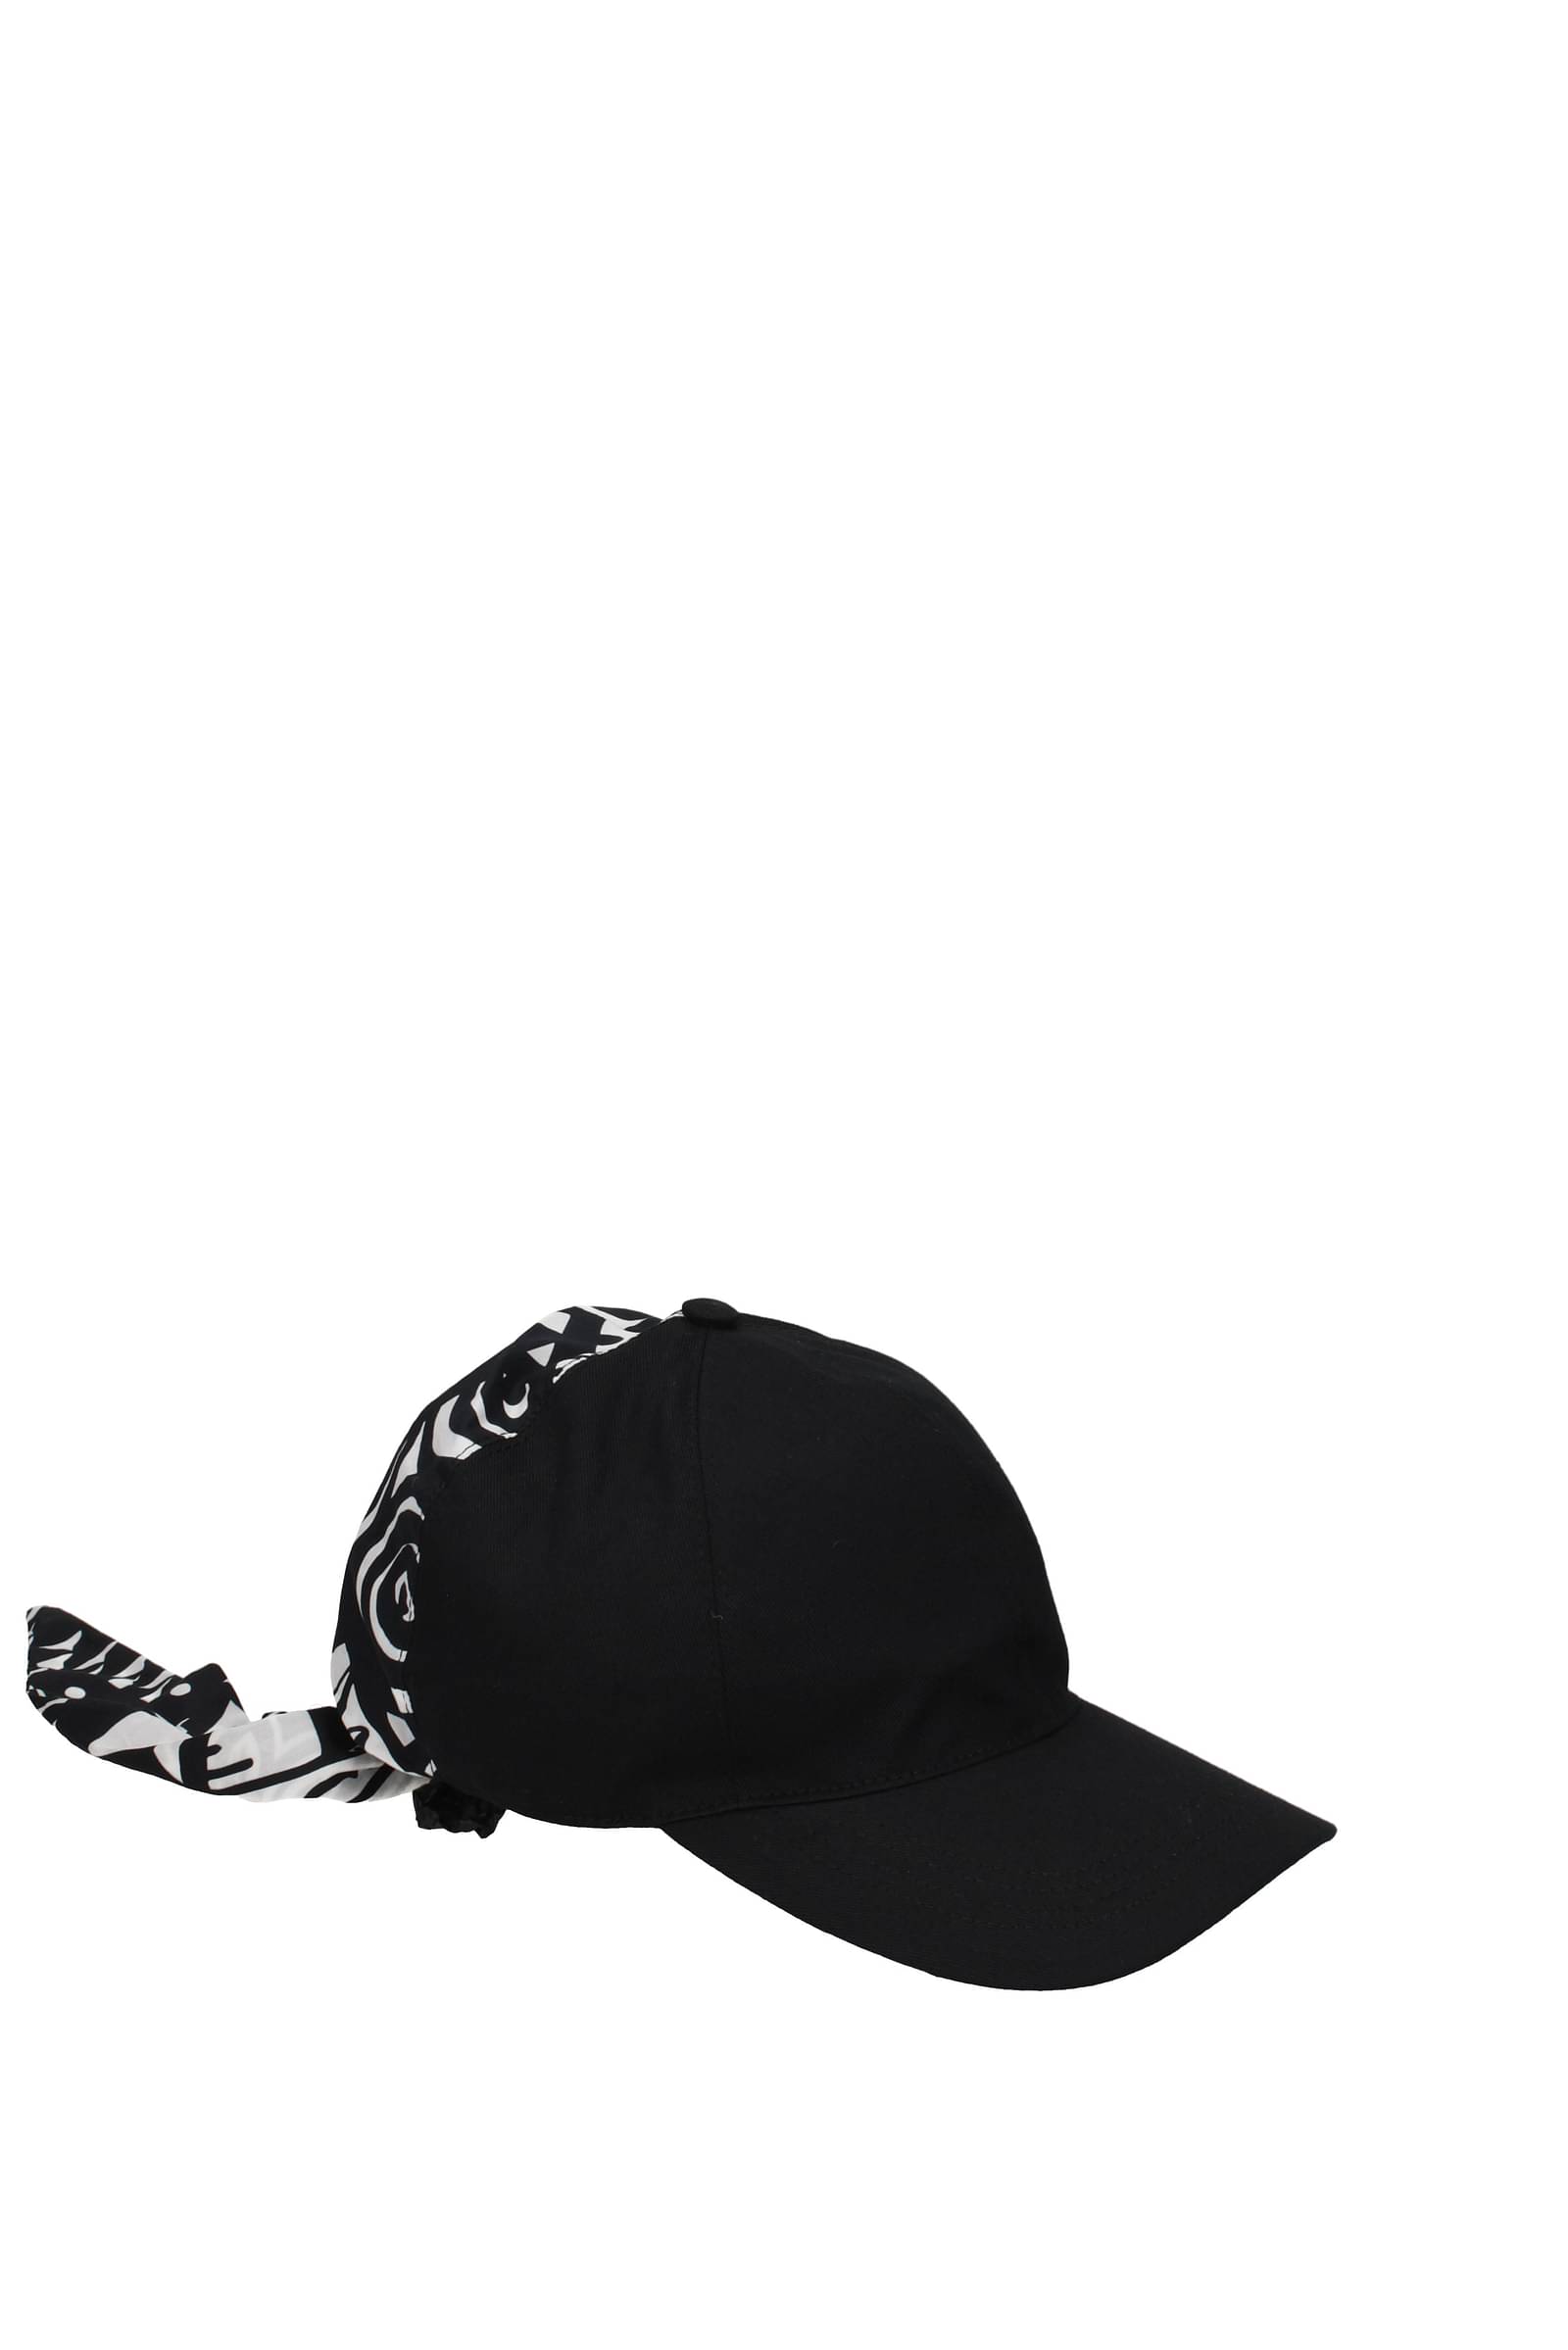 Dolce&Gabbana 帽子 男性 GH779AGF000HA3TX ポリアミド 黒 白 207,38€